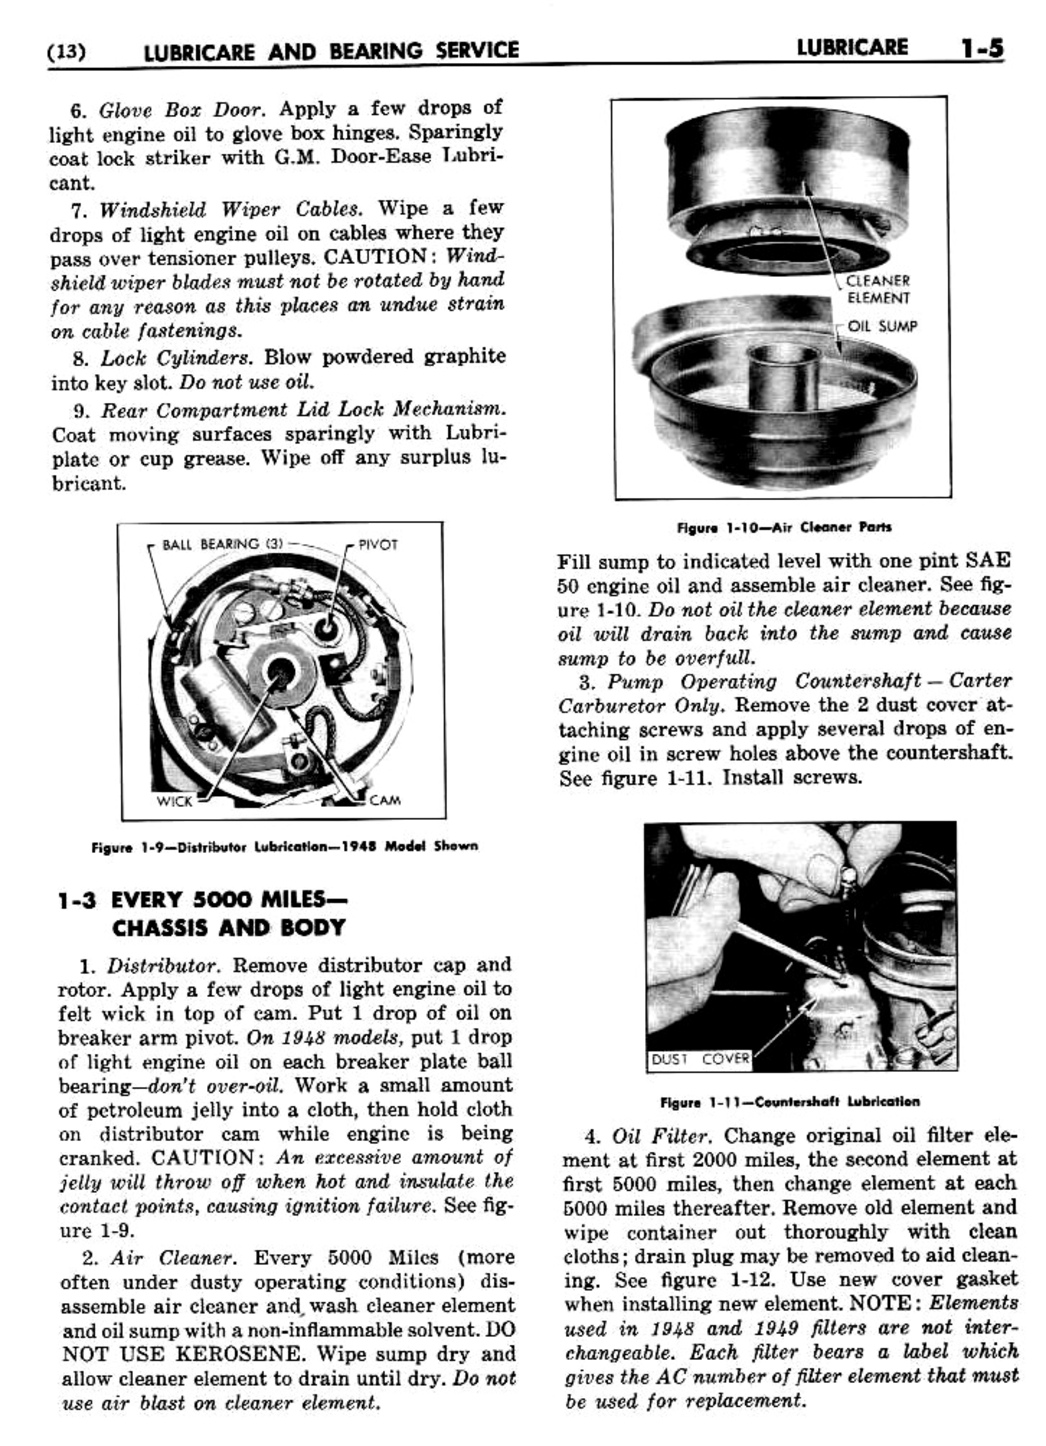 n_02 1948 Buick Shop Manual - Lubricare-005-005.jpg